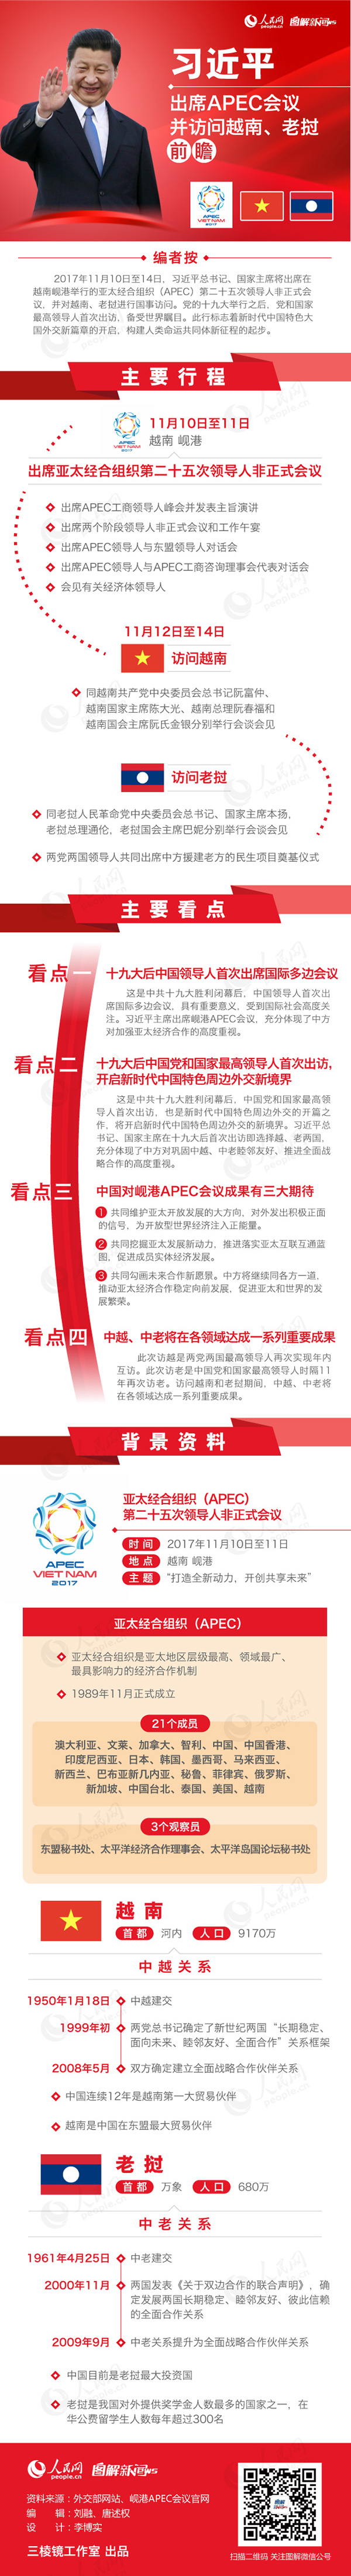 习近平出席APEC会议并访问越南、老挝前瞻